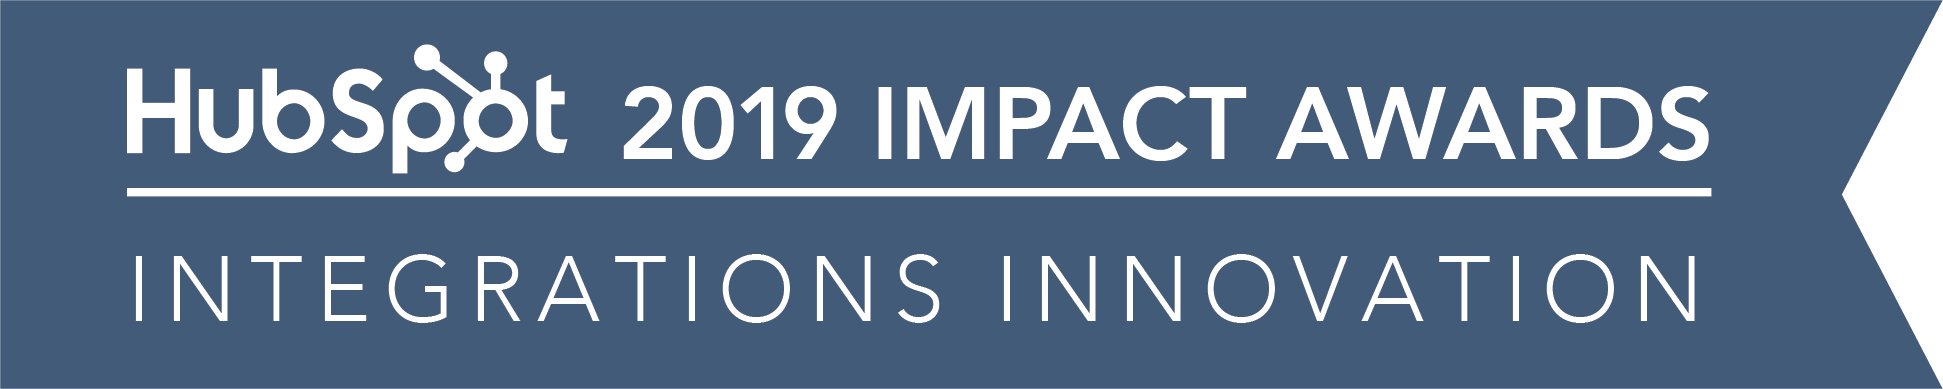 Hubspot_ImpactAwards_2019_IntegrationsInnovation-02-1